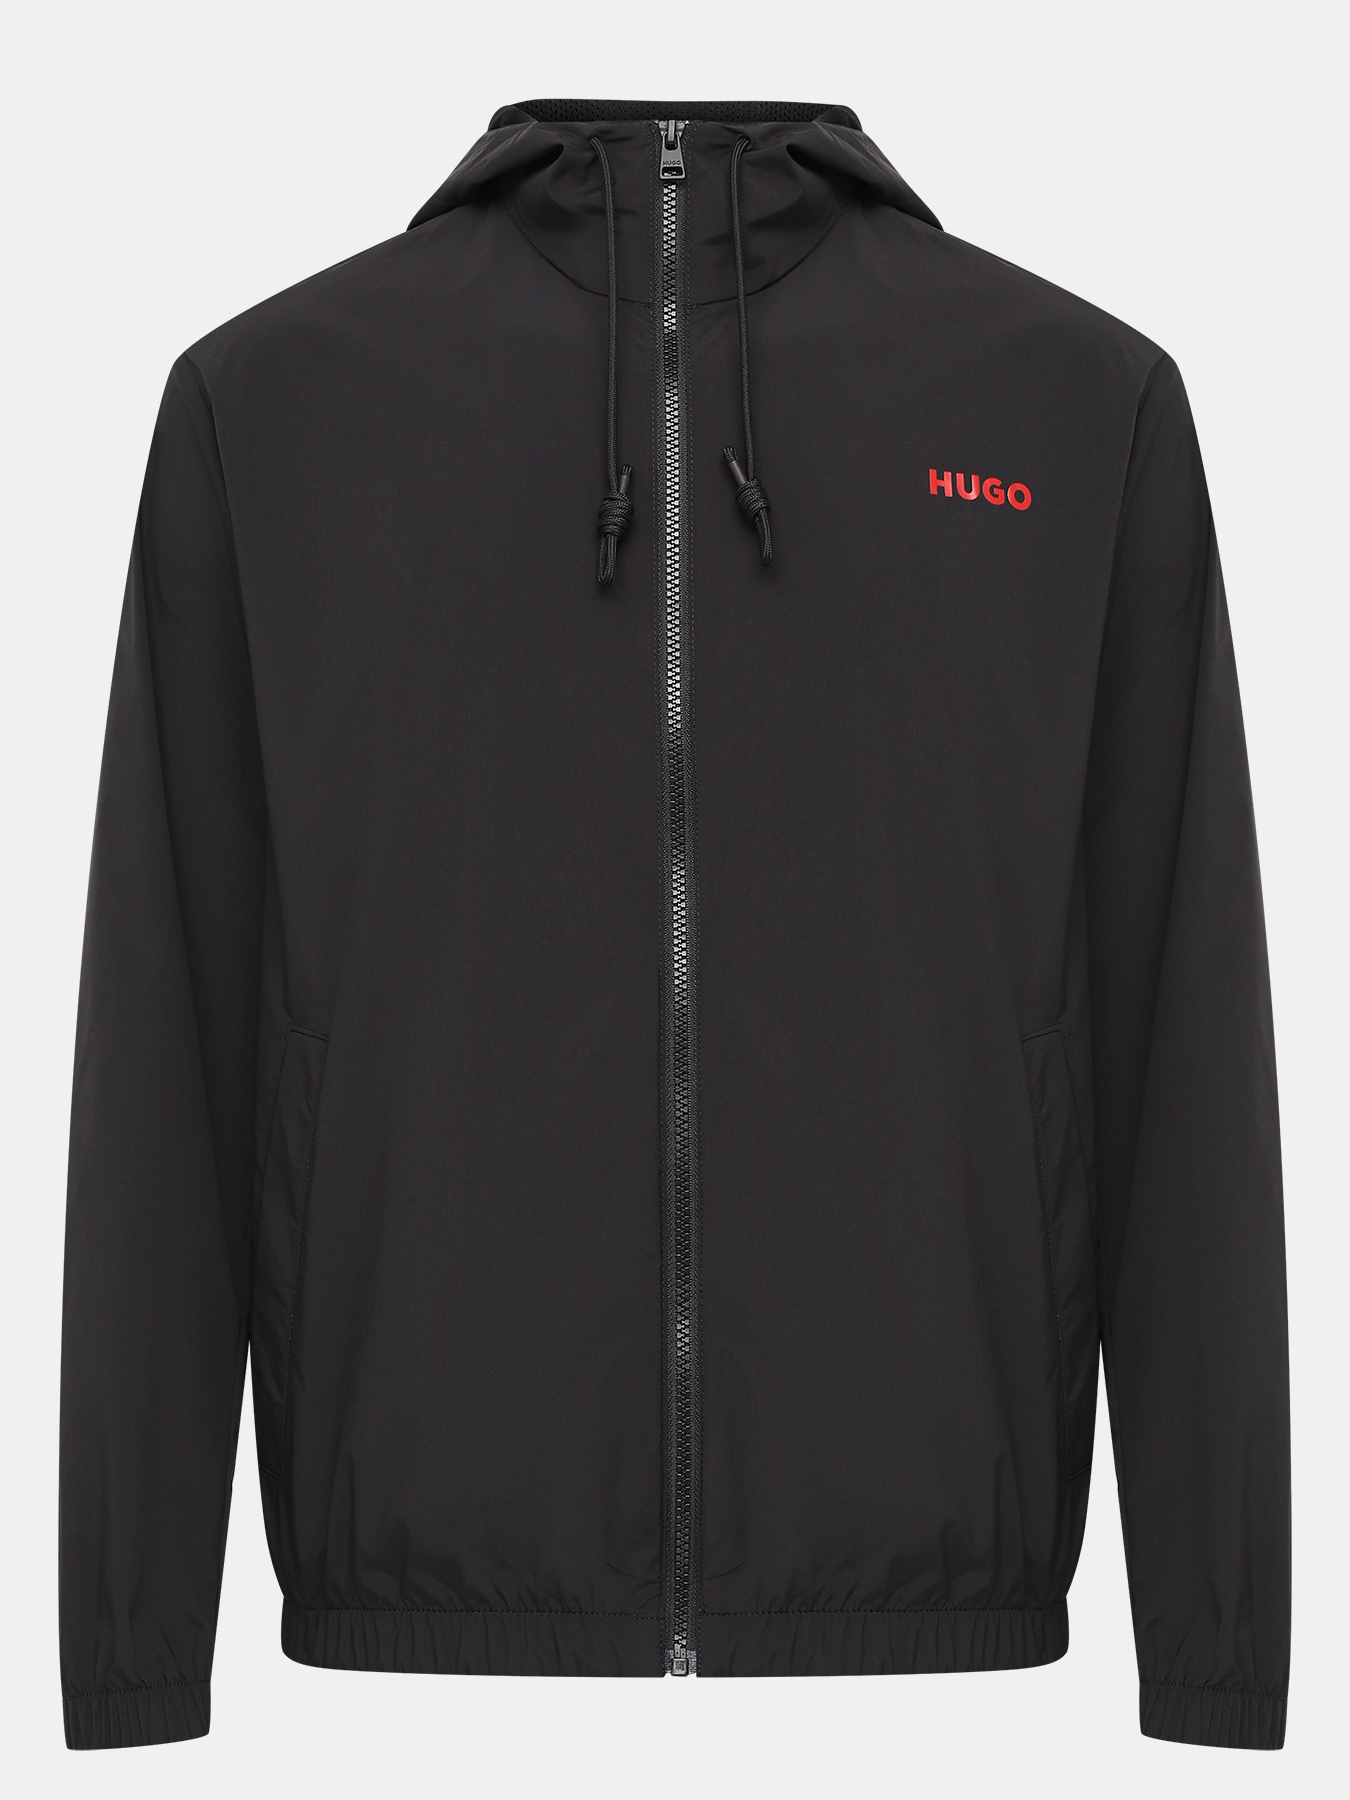 Куртка Benjoe HUGO 420435-046, цвет черный, размер 54-56